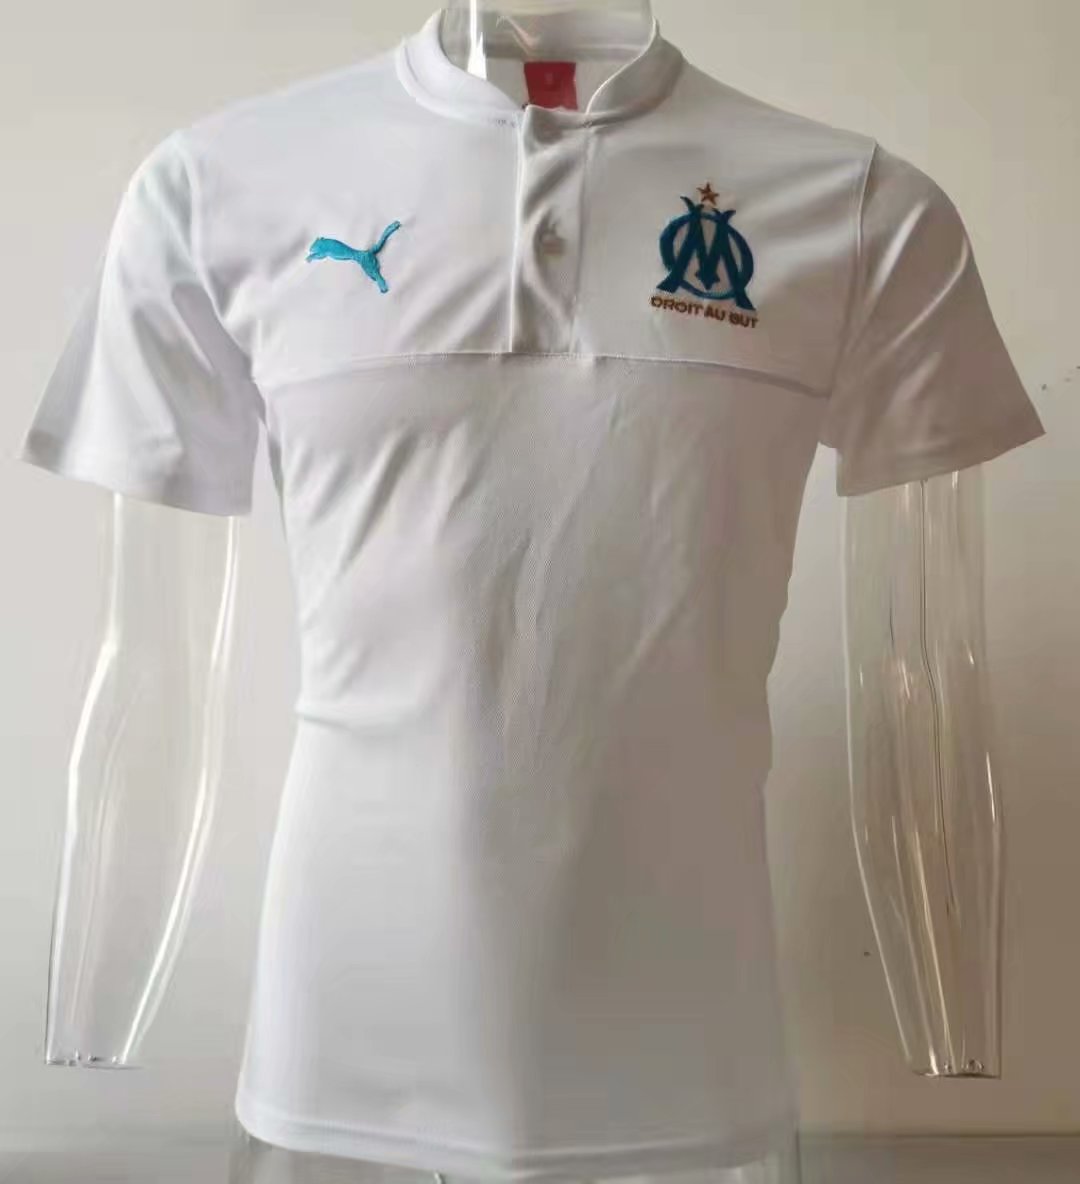 Marsella 2020 camiseta de fútbol blanca